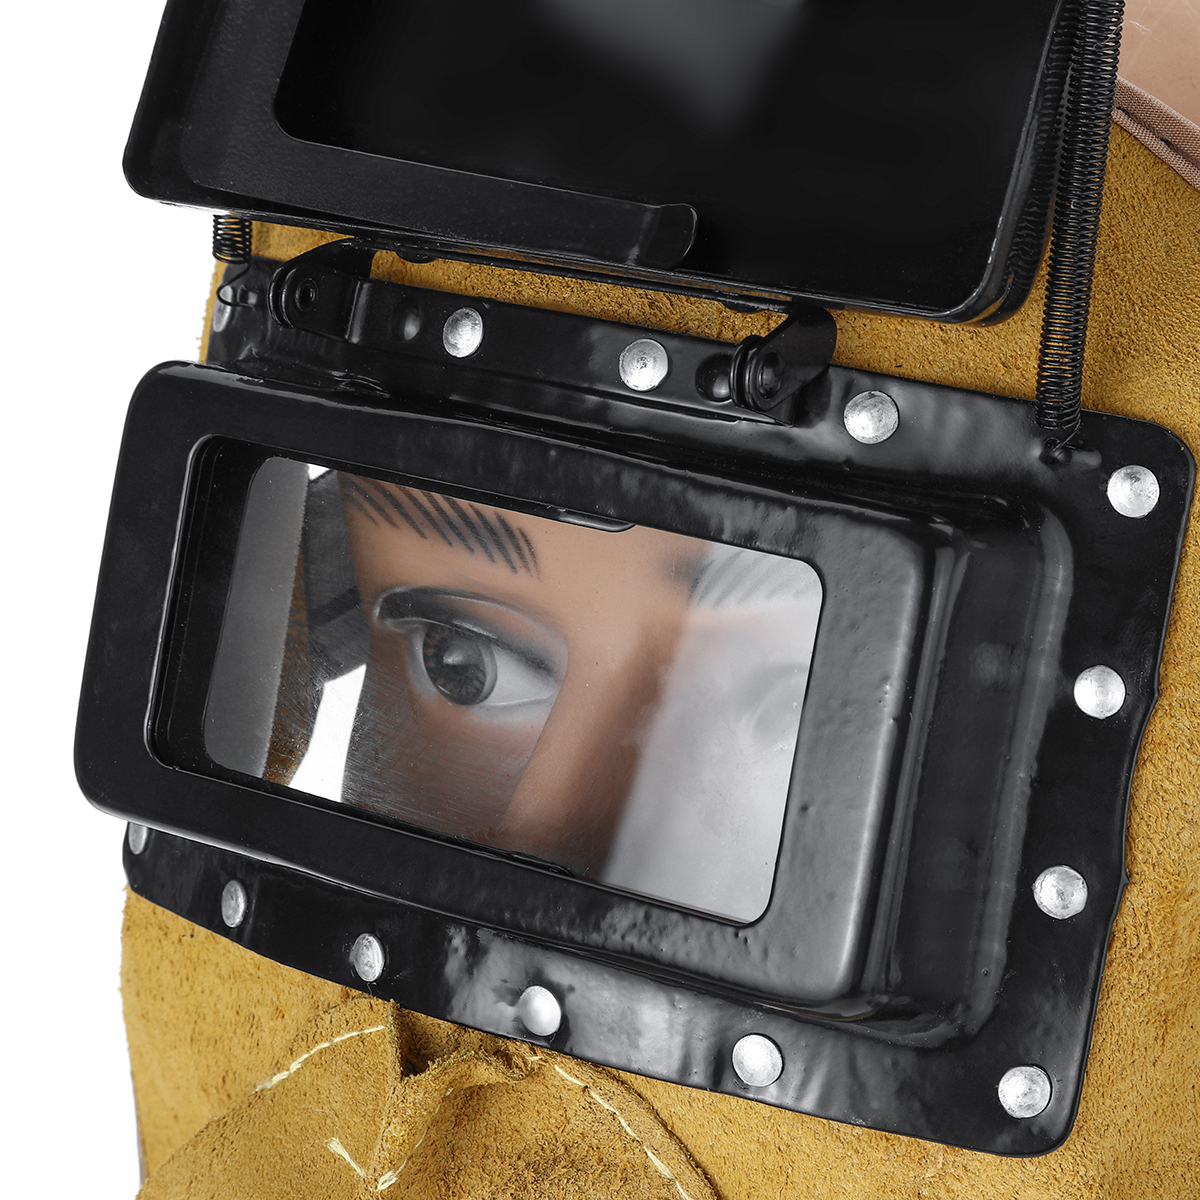 Solar-Auto-Darkening-Filter-Lens-Welder-Leather-Welding-Helmet-Full-Mask-Hood-1628687-7